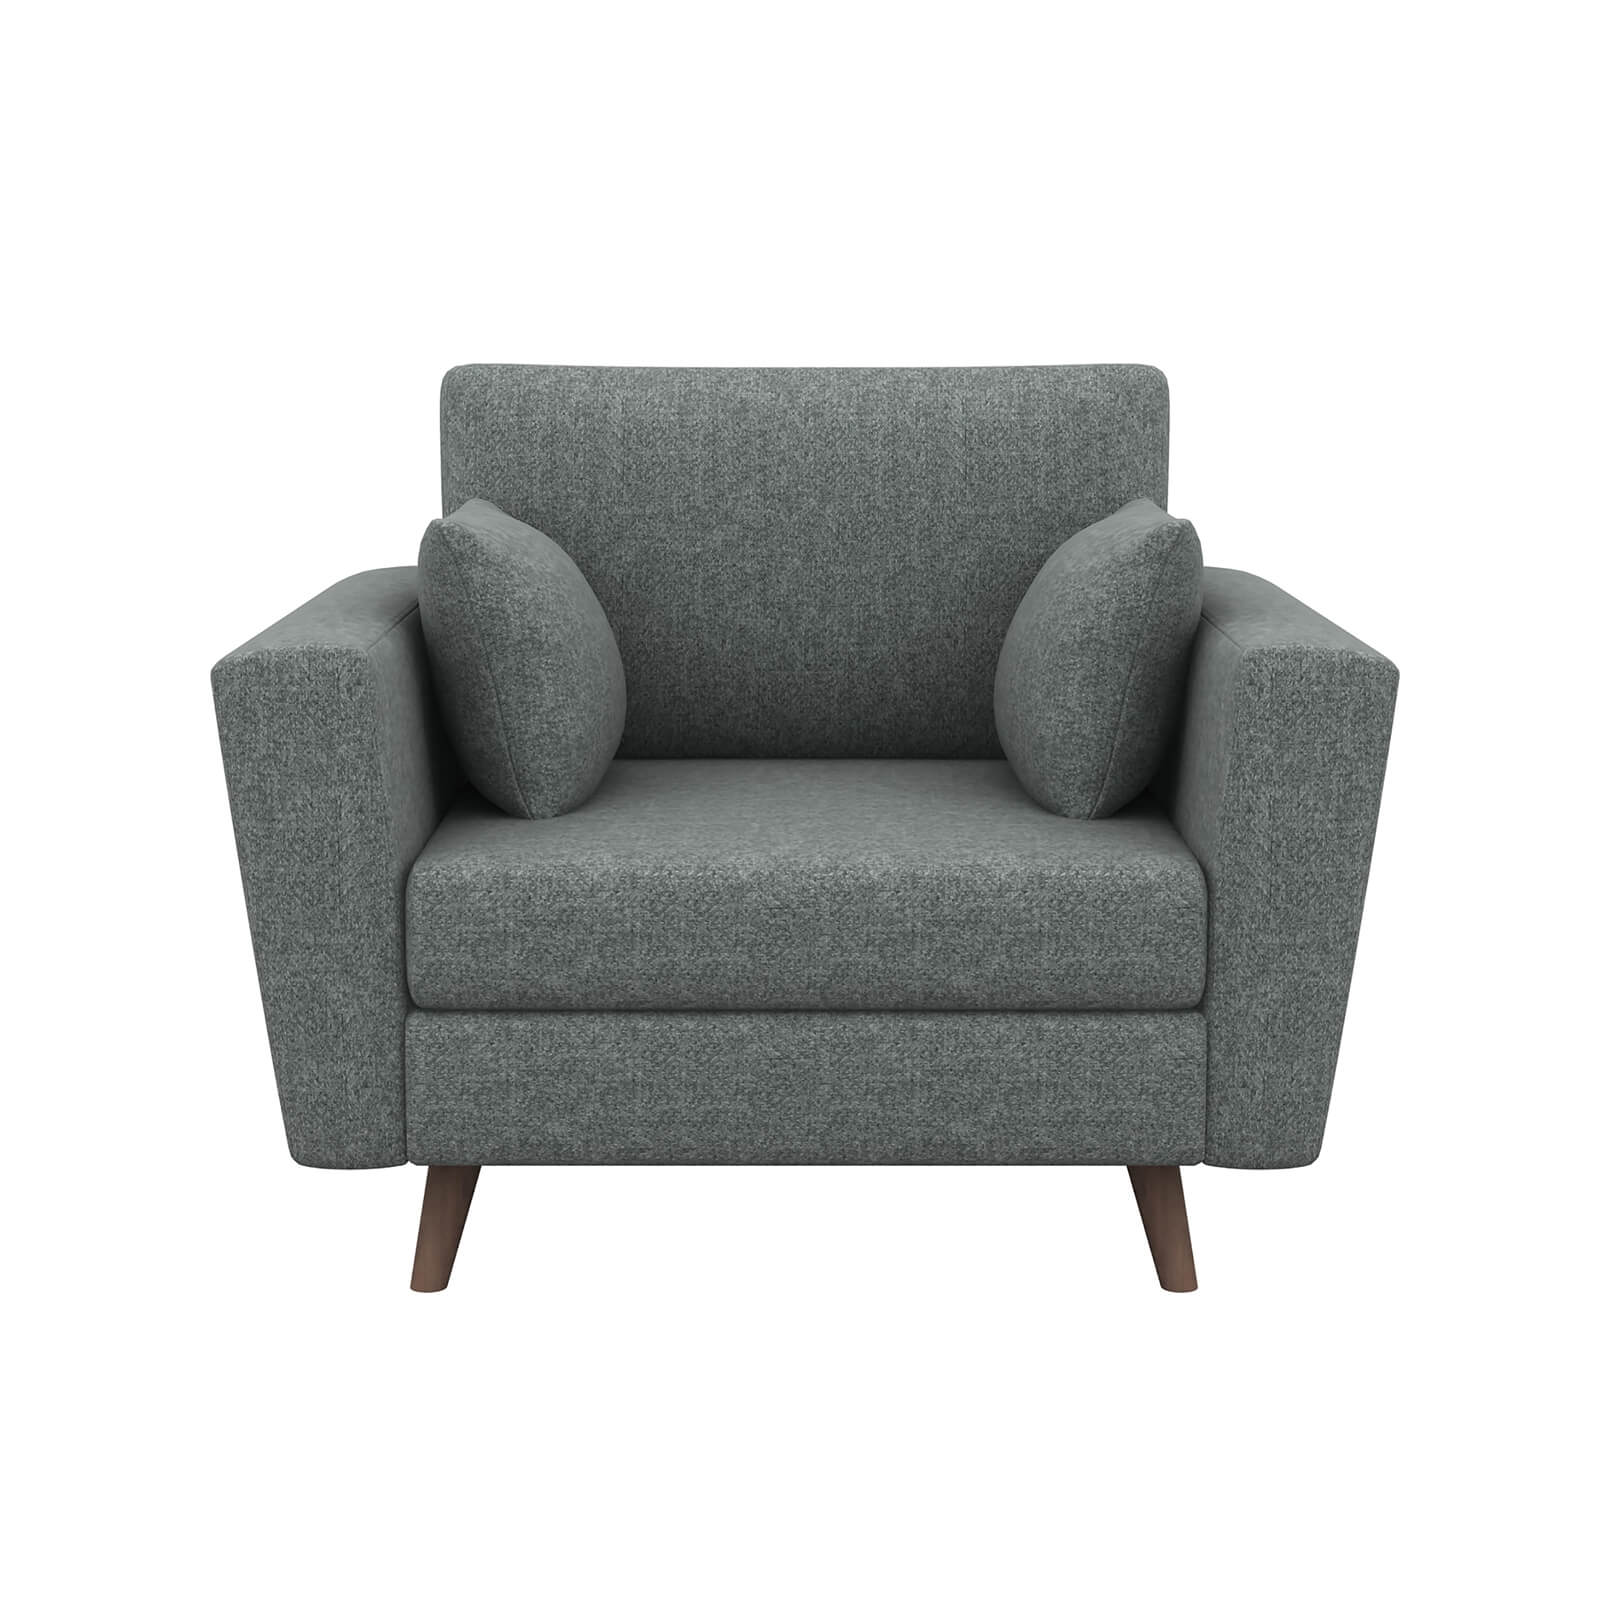 Lucia Cuddle Chair - Grey